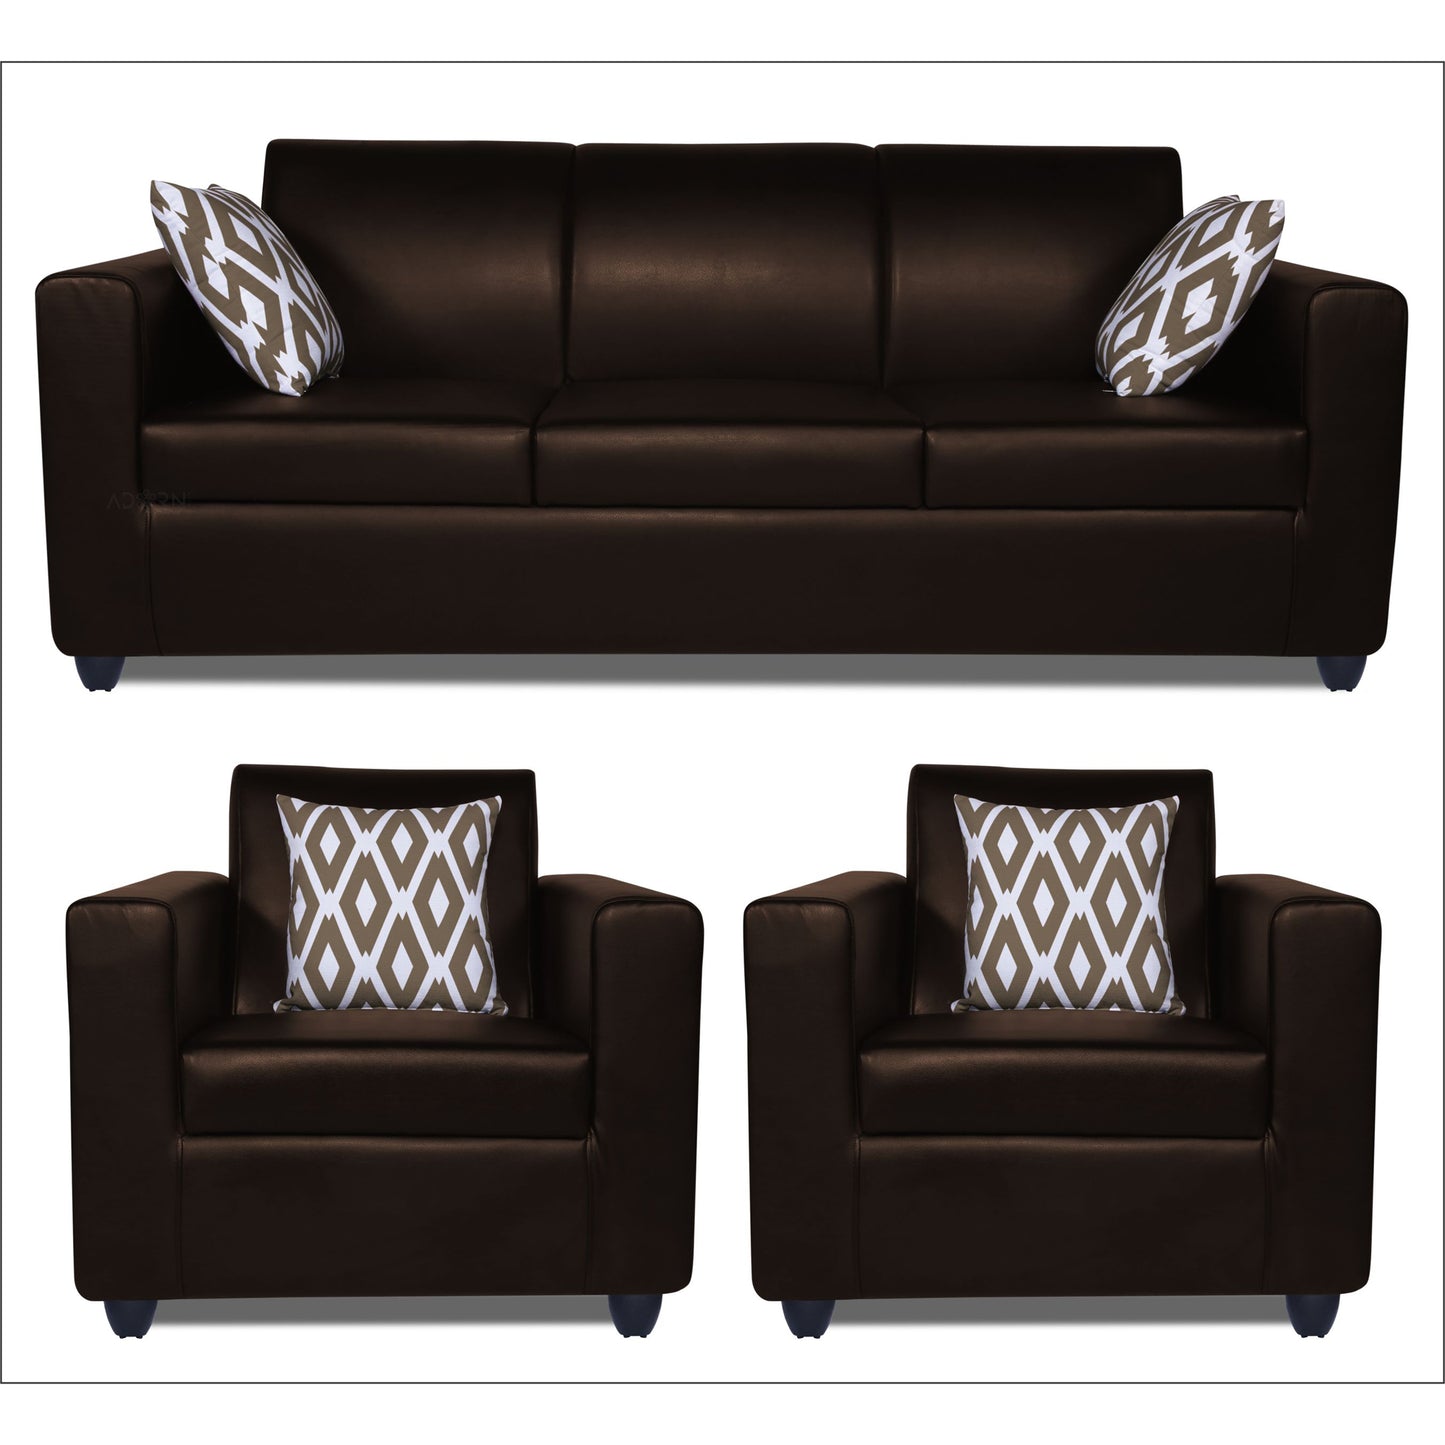 Adorn India Monteno Leatherette 5 Seater 3-1-1 Sofa Set (Brown)